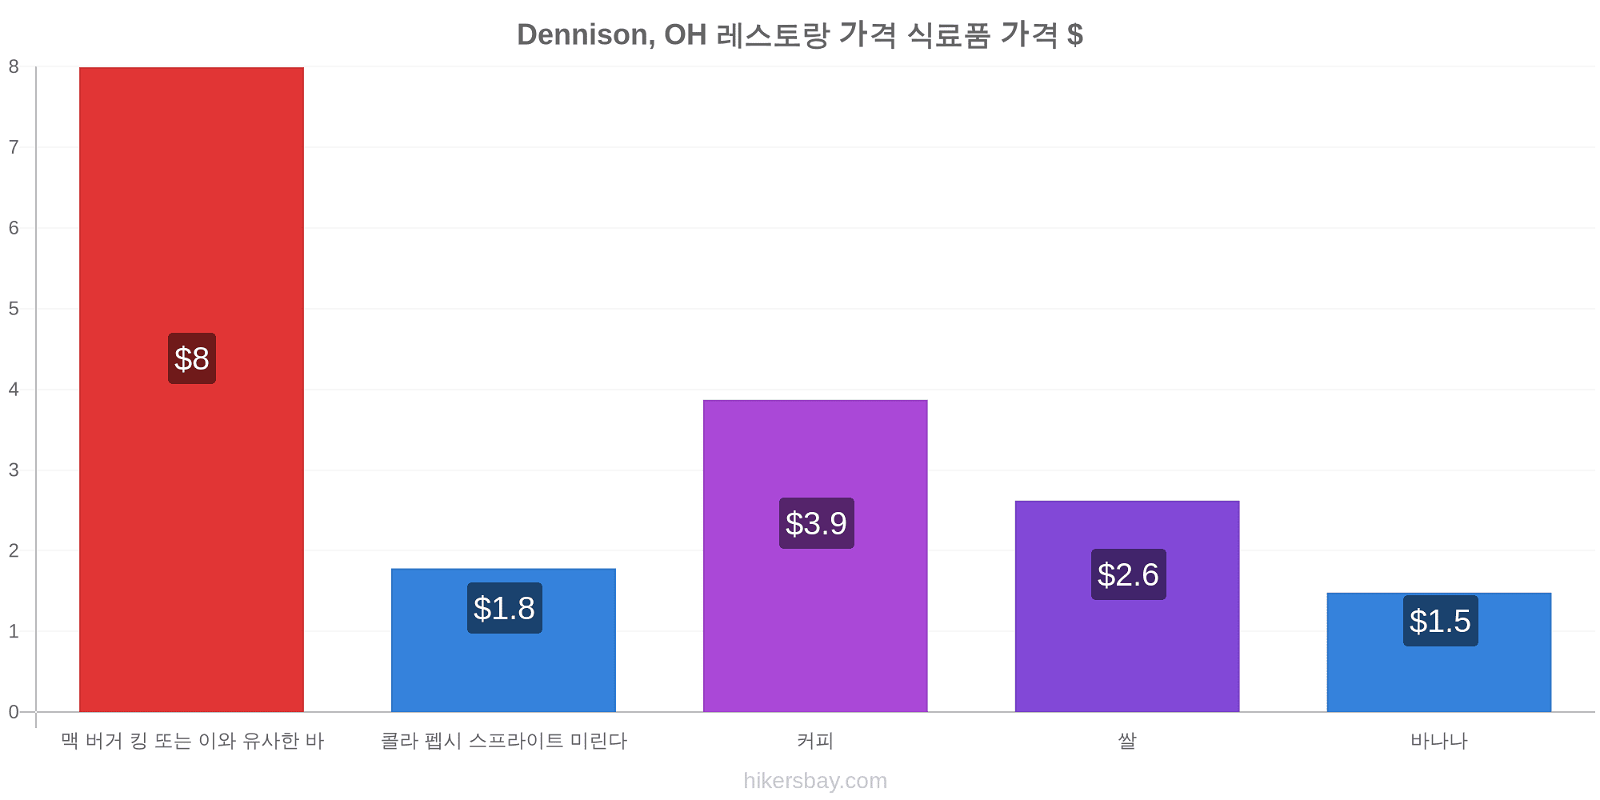 Dennison, OH 가격 변동 hikersbay.com